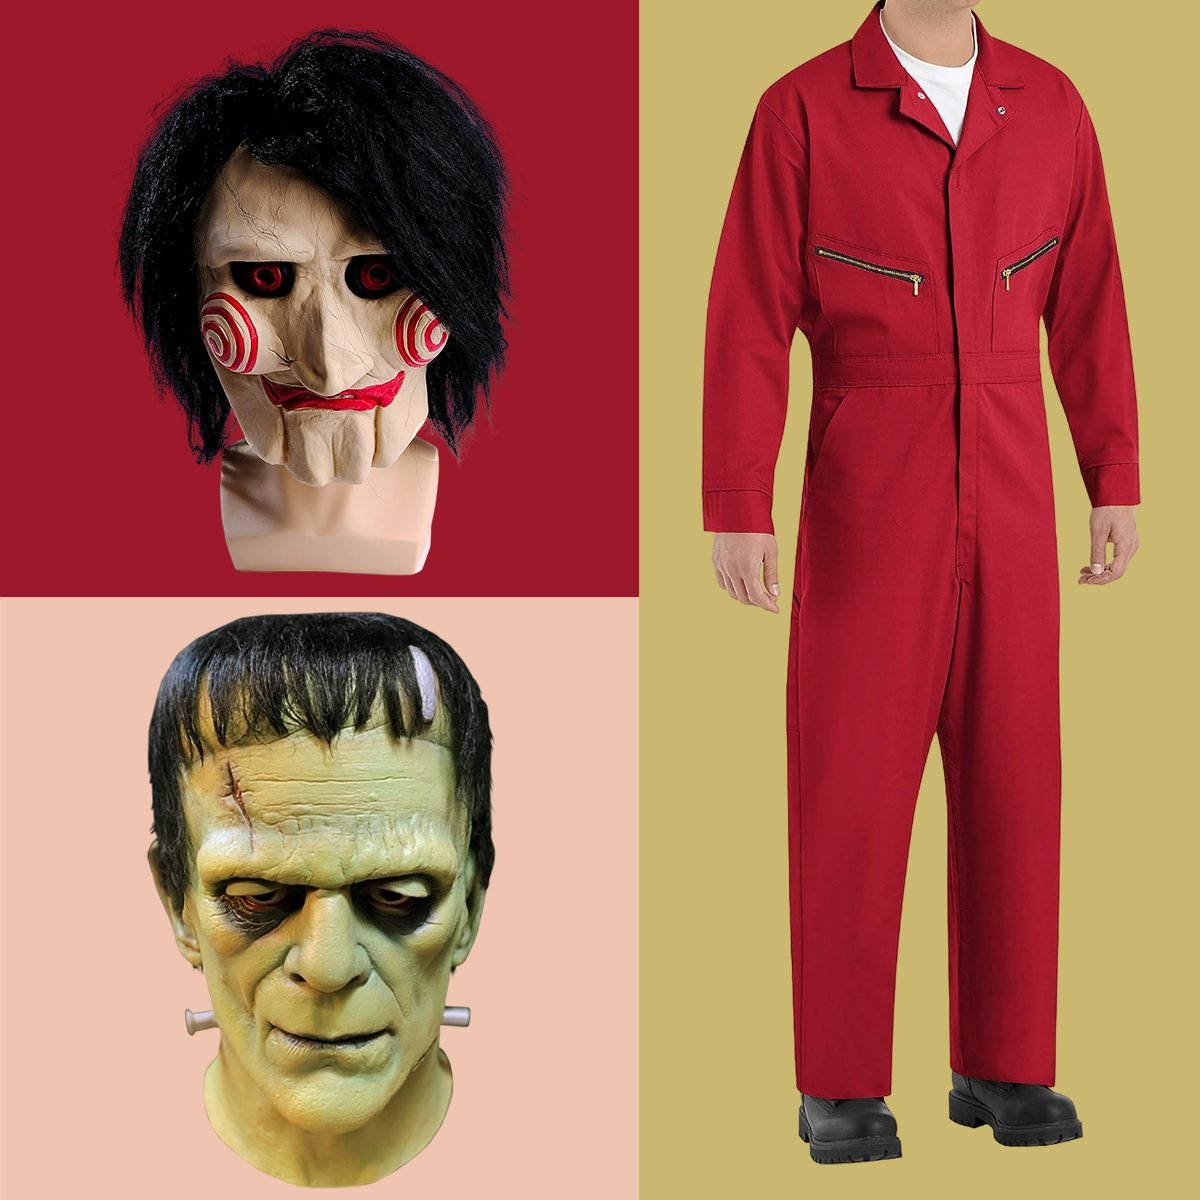  Horror Tools Costume Accessory : Tools & Home Improvement